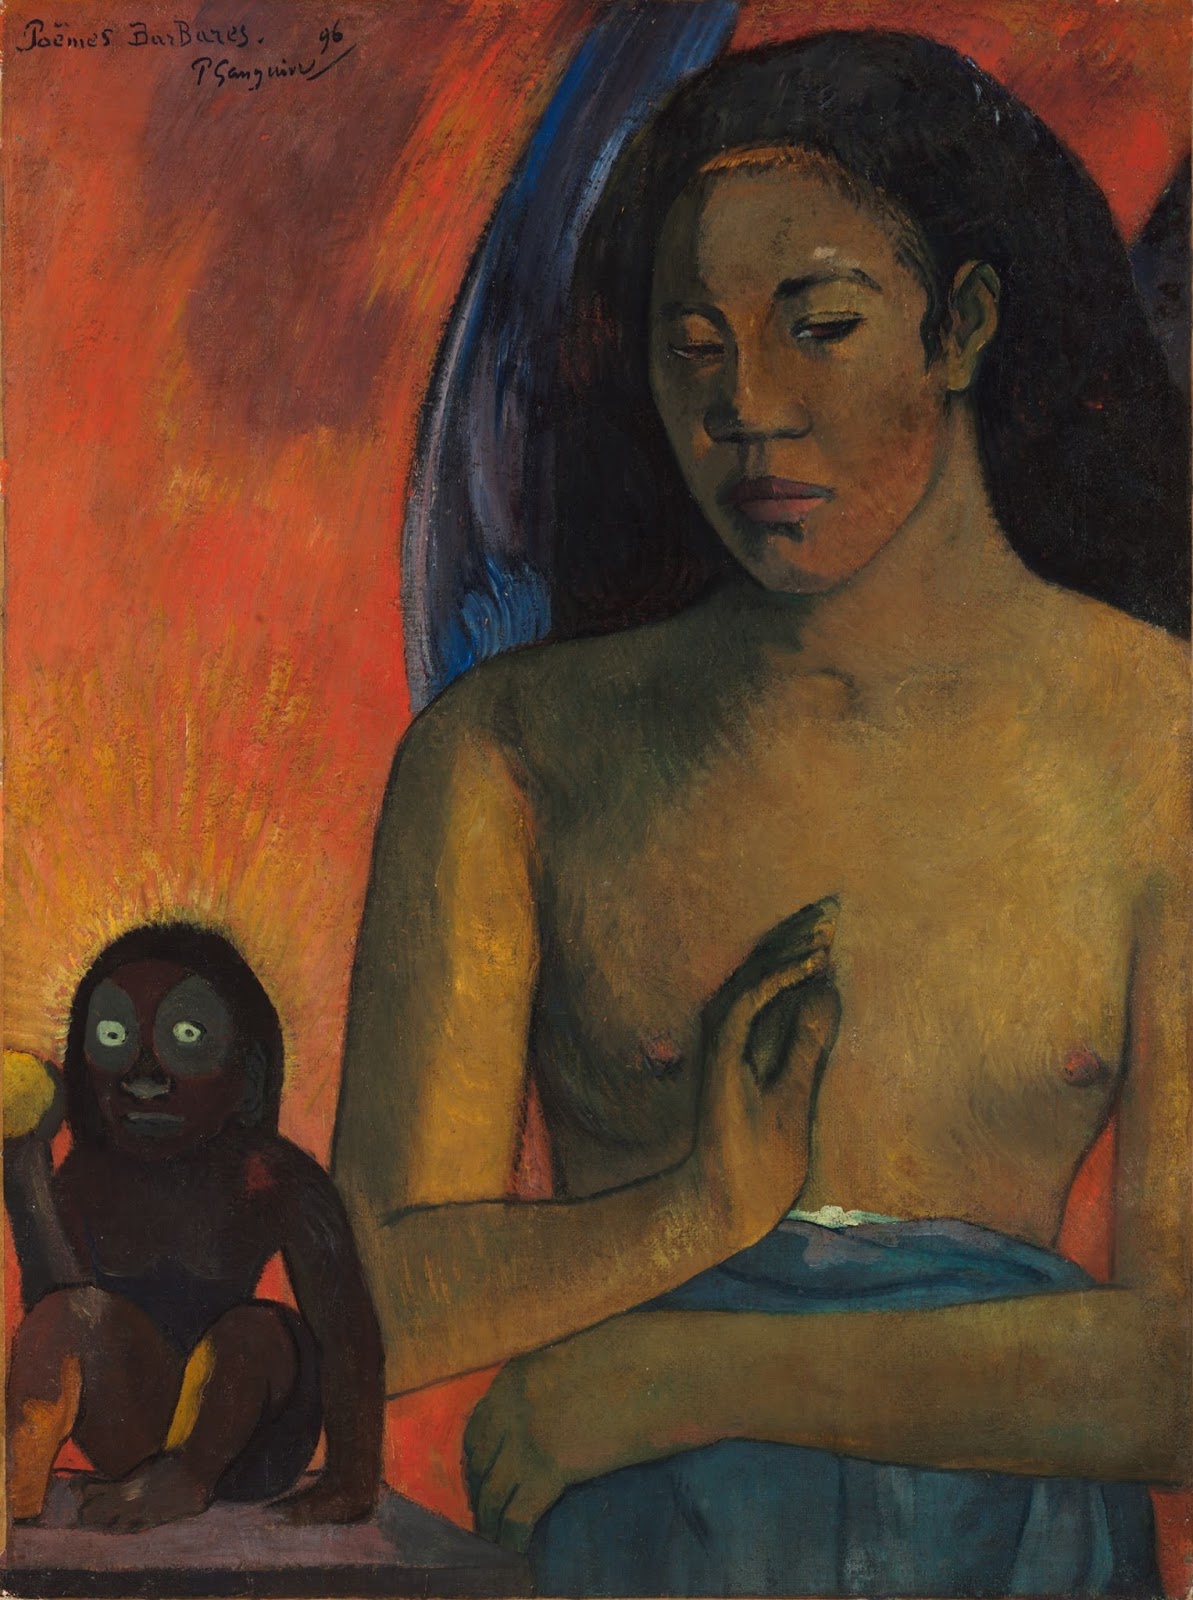 Paul+Gauguin-1848-1903 (292).jpg